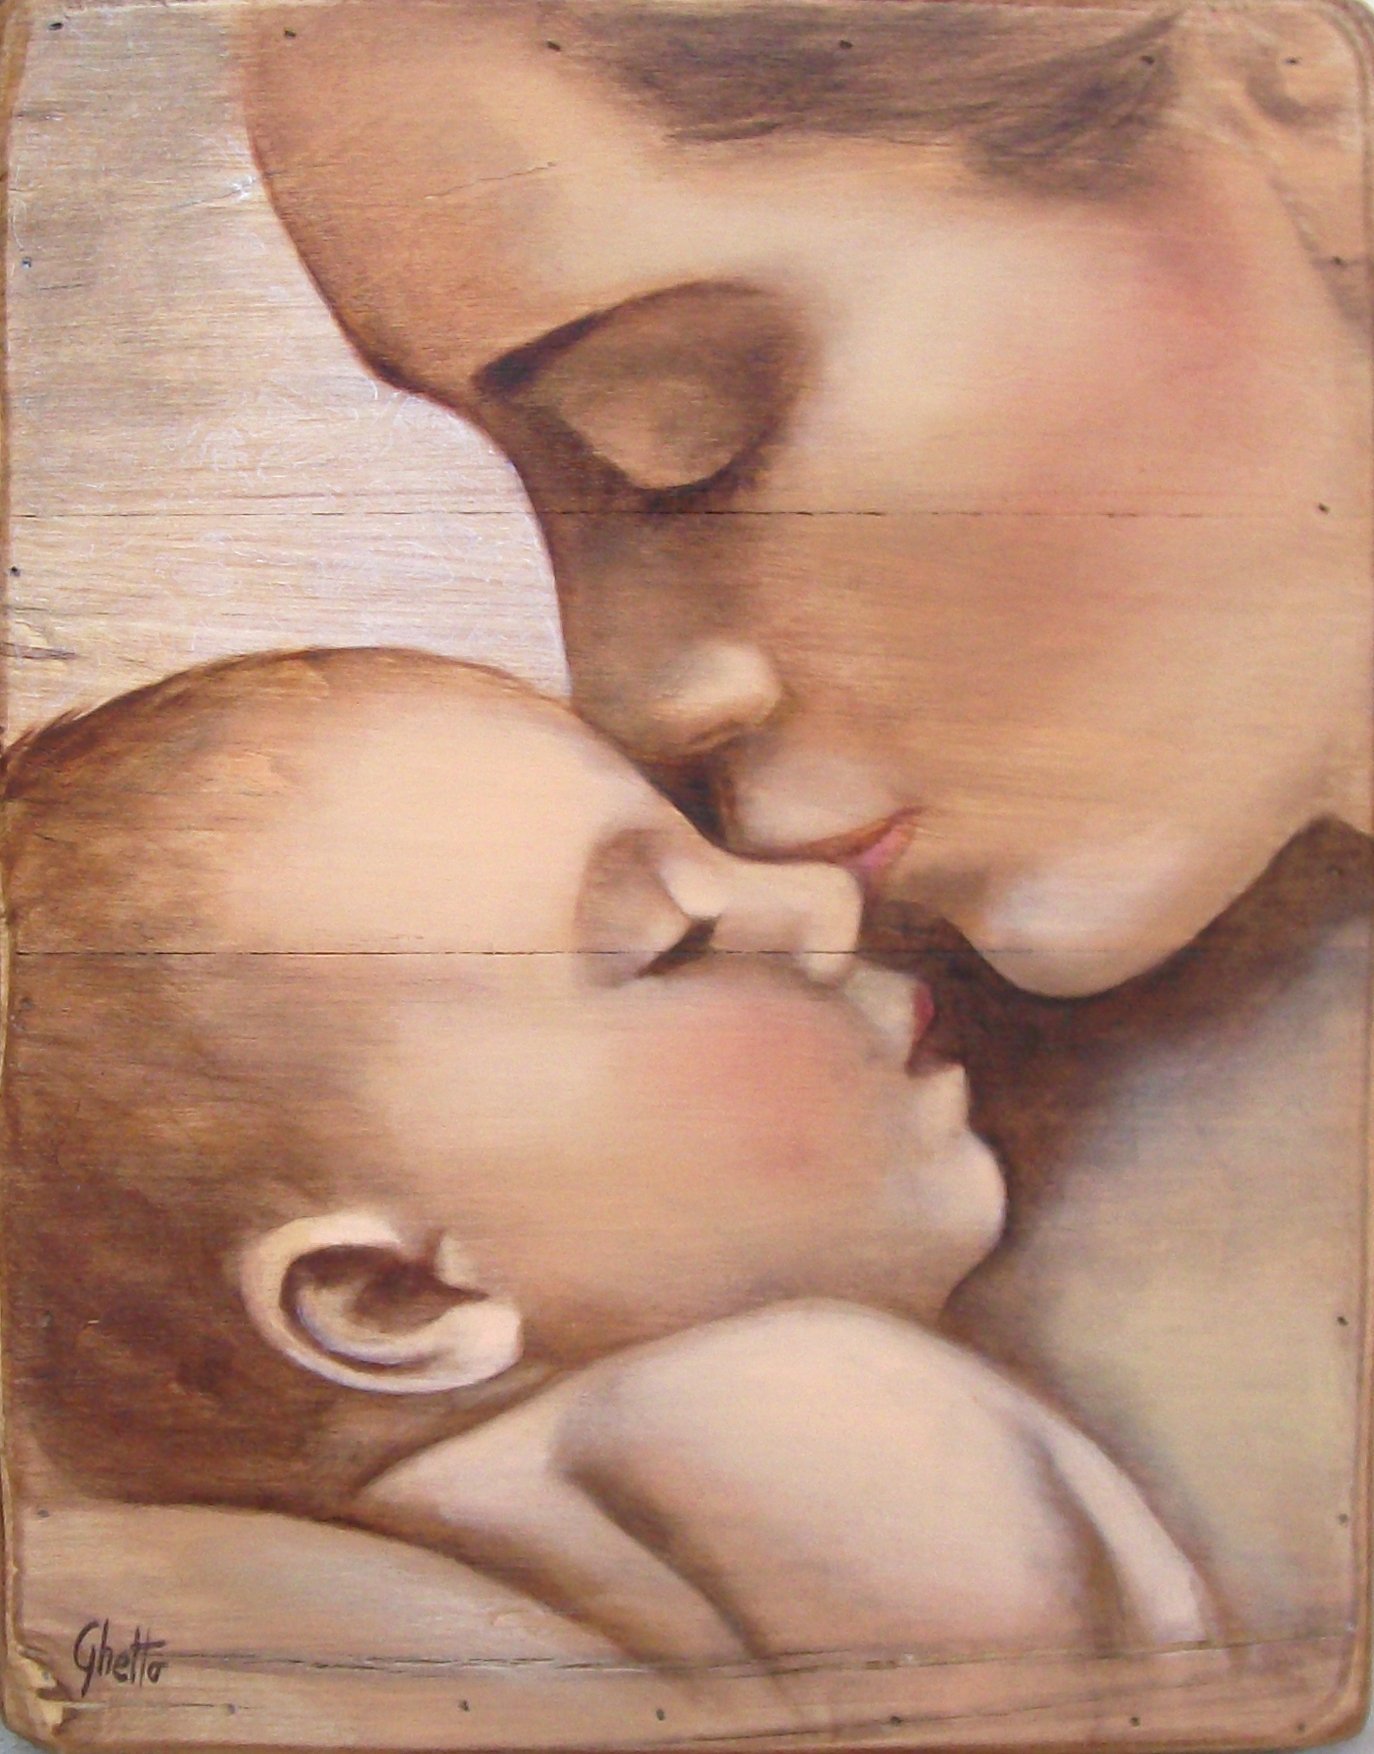 Современная материнства. "Мать и дитя", Жук, 1906. Claudia Tremblay картины мать и дитя. Мама с ребенком рисунок. Мама с ребенком живопись.